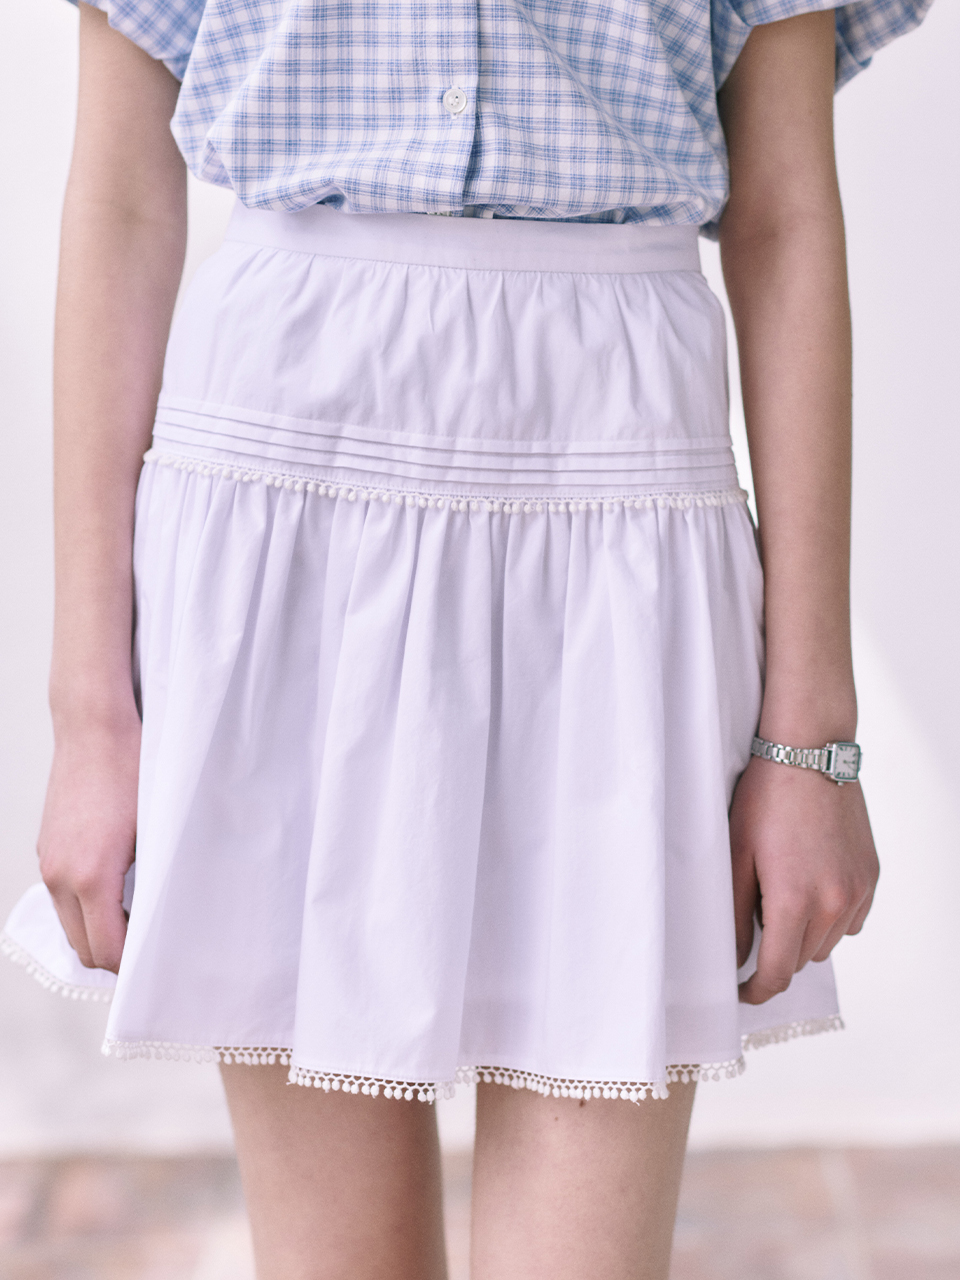 Shirring Lace Mini Skirt_2color